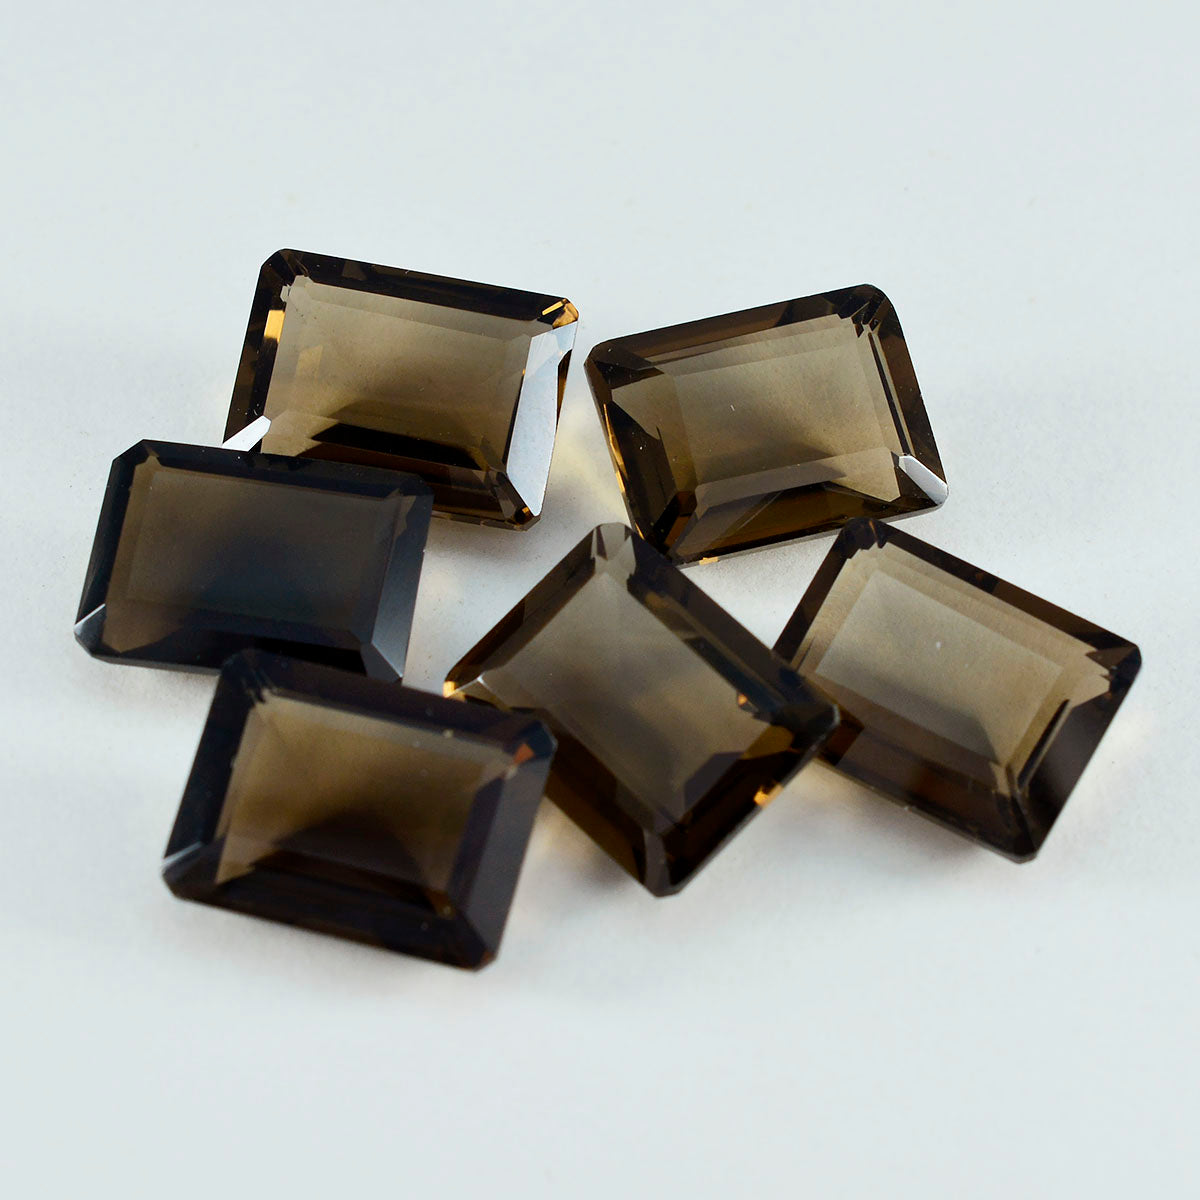 Riyogems 1PC Echt Bruin Rookkwarts Facet 10x12 mm Achthoekige vorm uitstekende kwaliteit losse steen